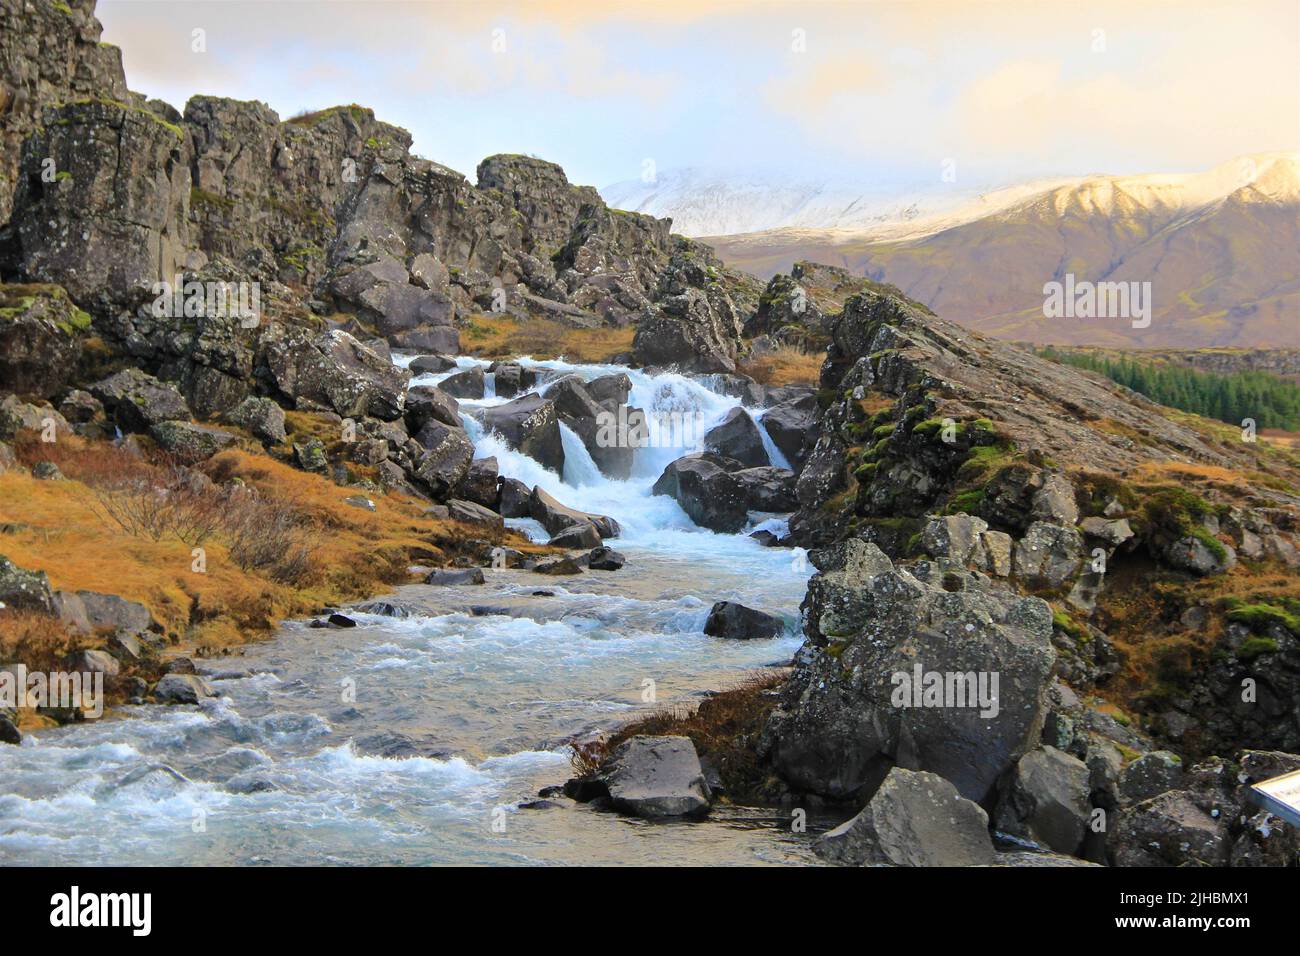 Un bel torrente di montagna islandese precipita d'acqua in un ambiente pittoresco illuminato da una bella luce colorata Foto Stock